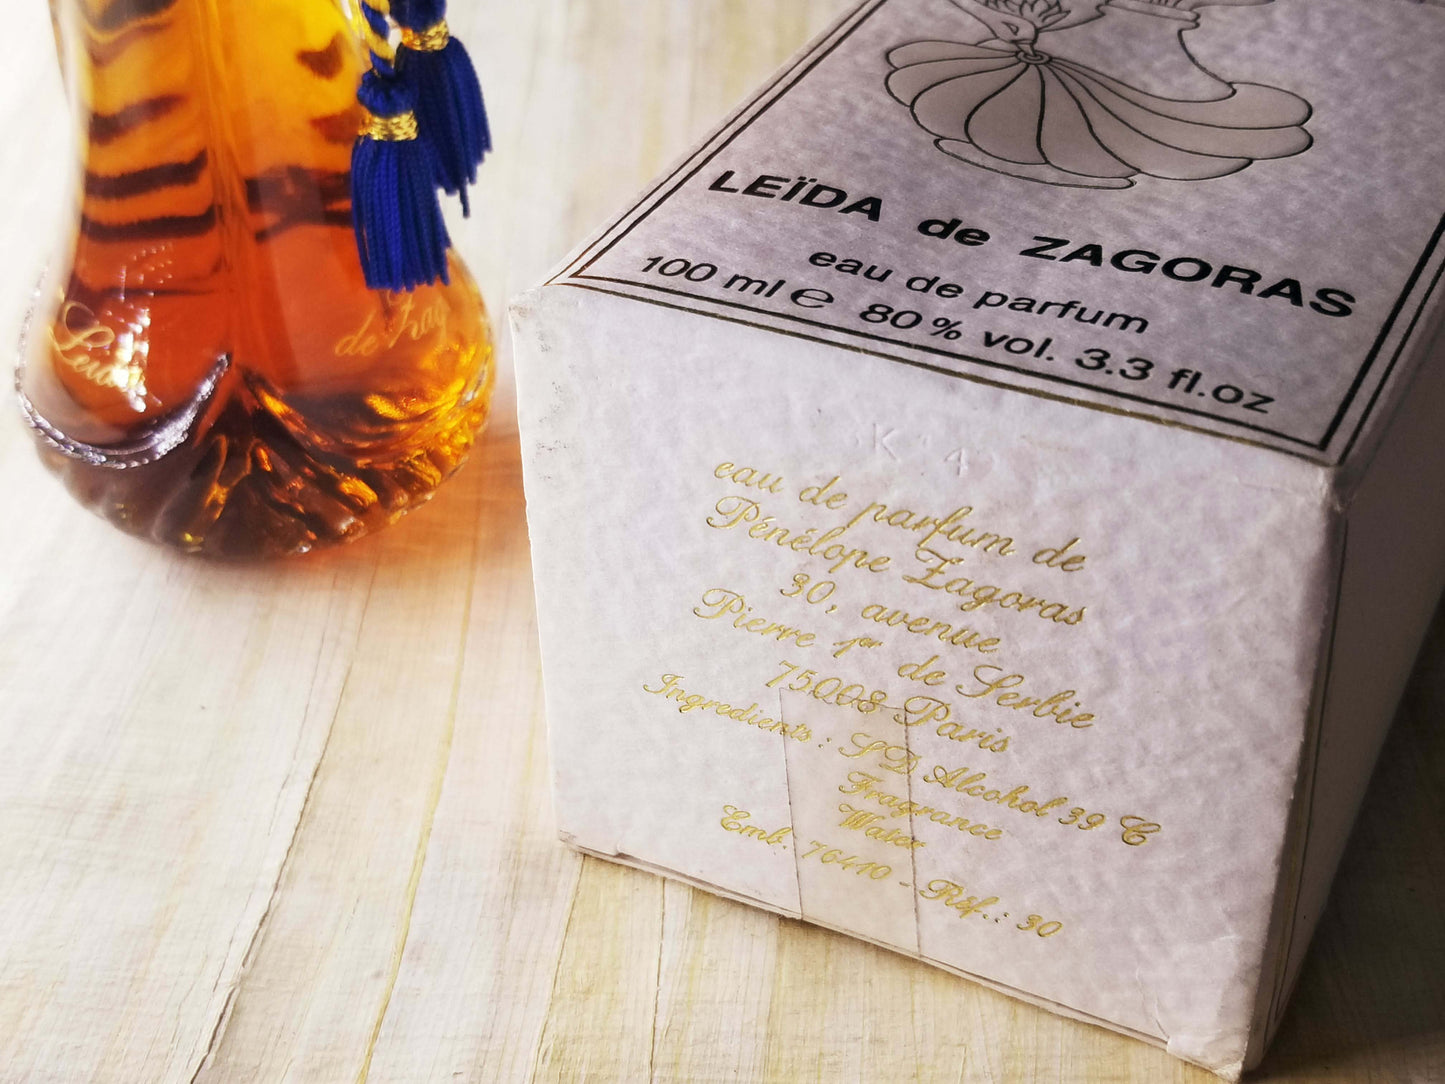 Leïda de Zagoras Pénélope Zagoras for women EDP Spray for Woman 100 ml 3.4 oz Or 50 ml 1.7 oz, Vintage